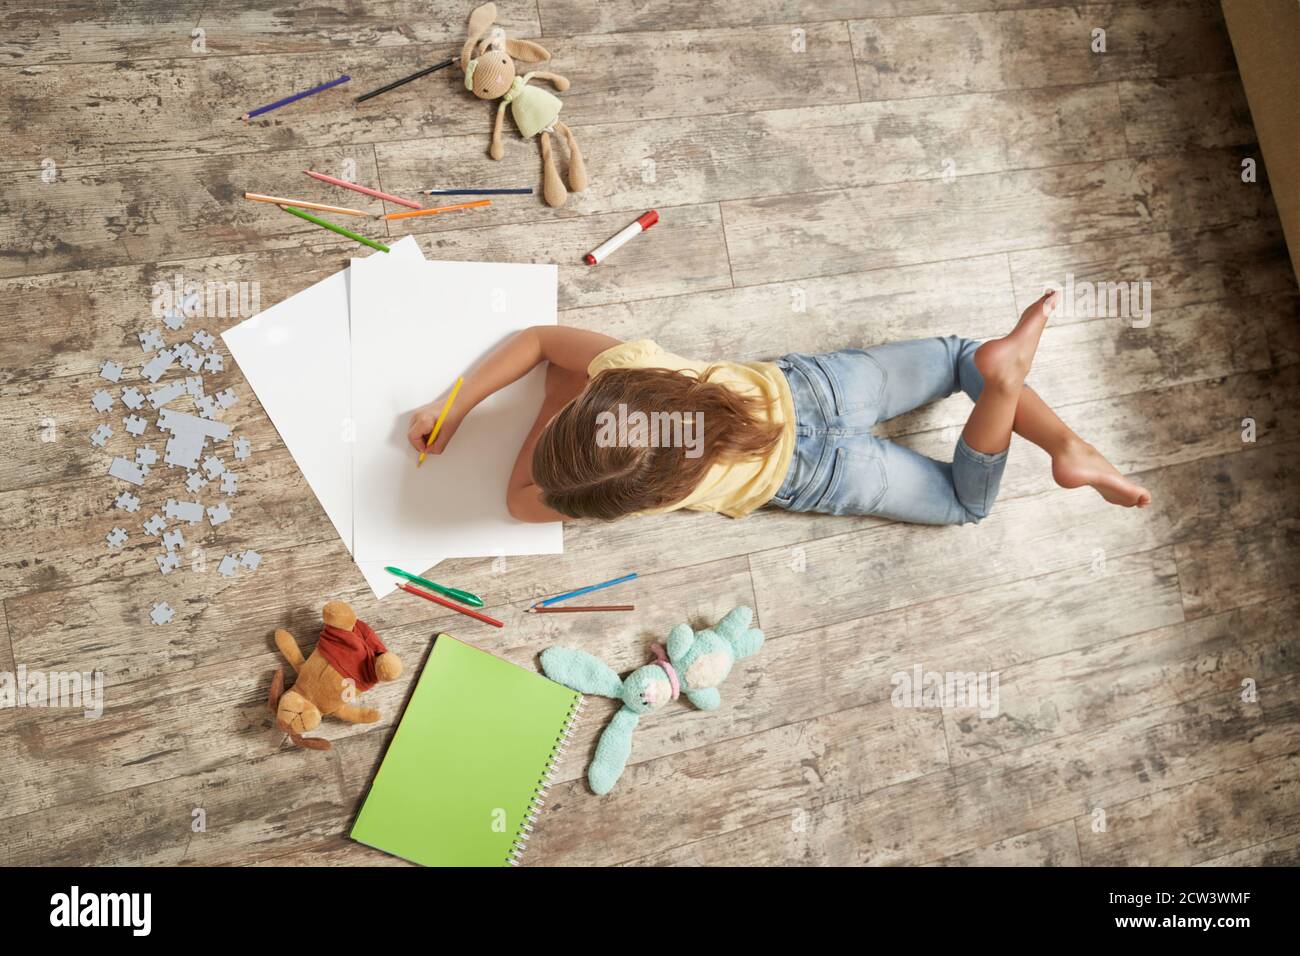 Vista dall'alto della bambina sdraiata sul pavimento in legno nella sua stanza a casa e disegnando con matite colorate su un foglio di carta bianco Foto Stock